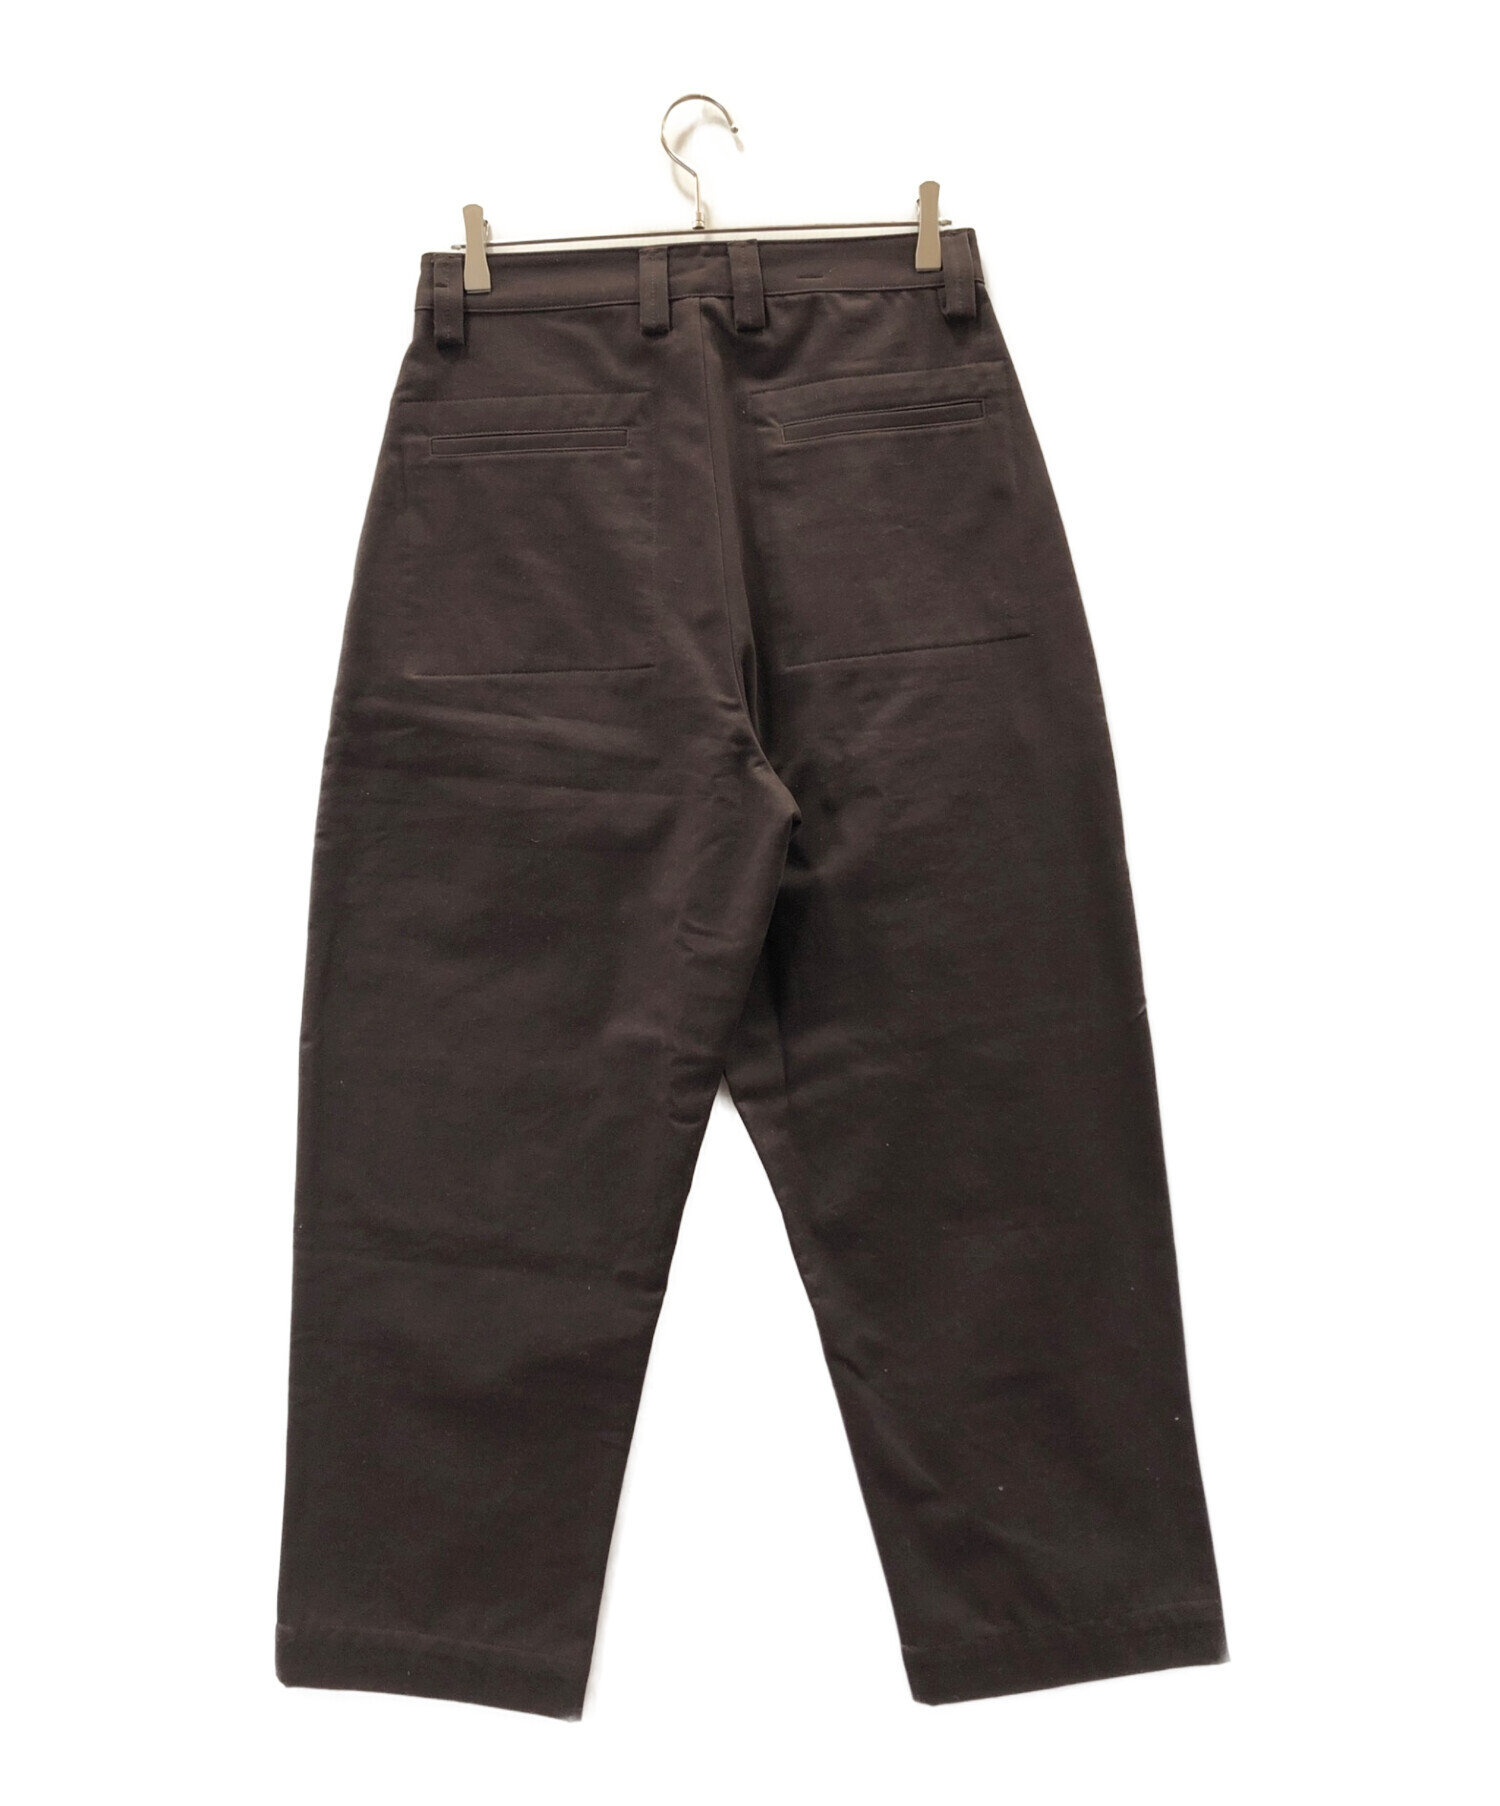 STUDIO NICHOLSON (スタジオニコルソン) bionda single pleat tapered pants ブラウン サイズ:M